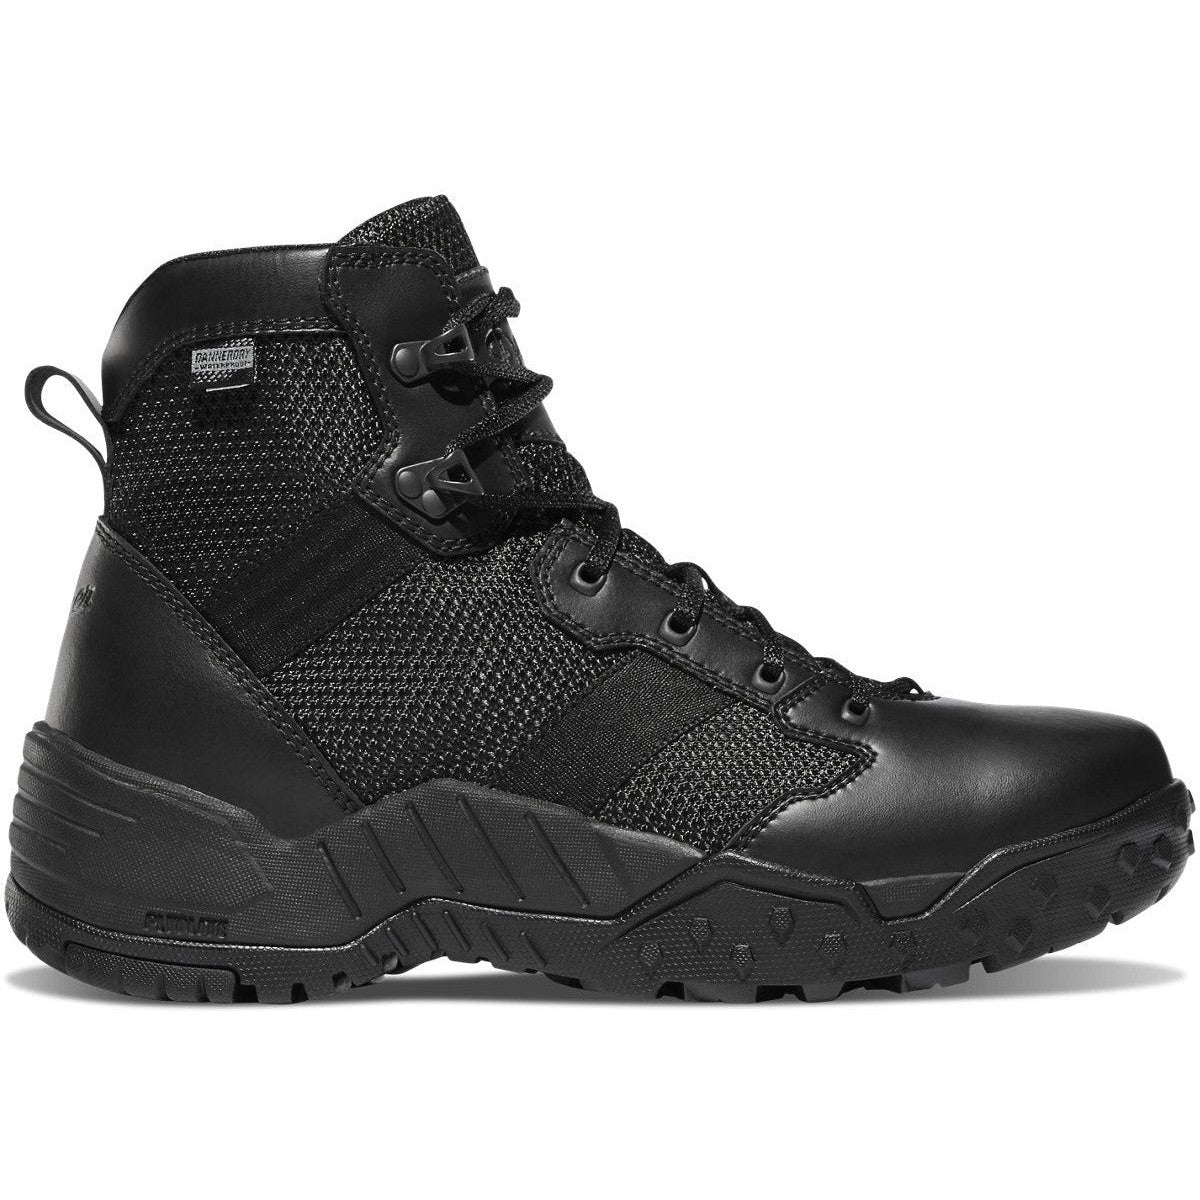 Danner Men's Scorch 6" Waterproof Side Zip Duty Boot -Black- 25731 6 / Medium / Black - Overlook Boots